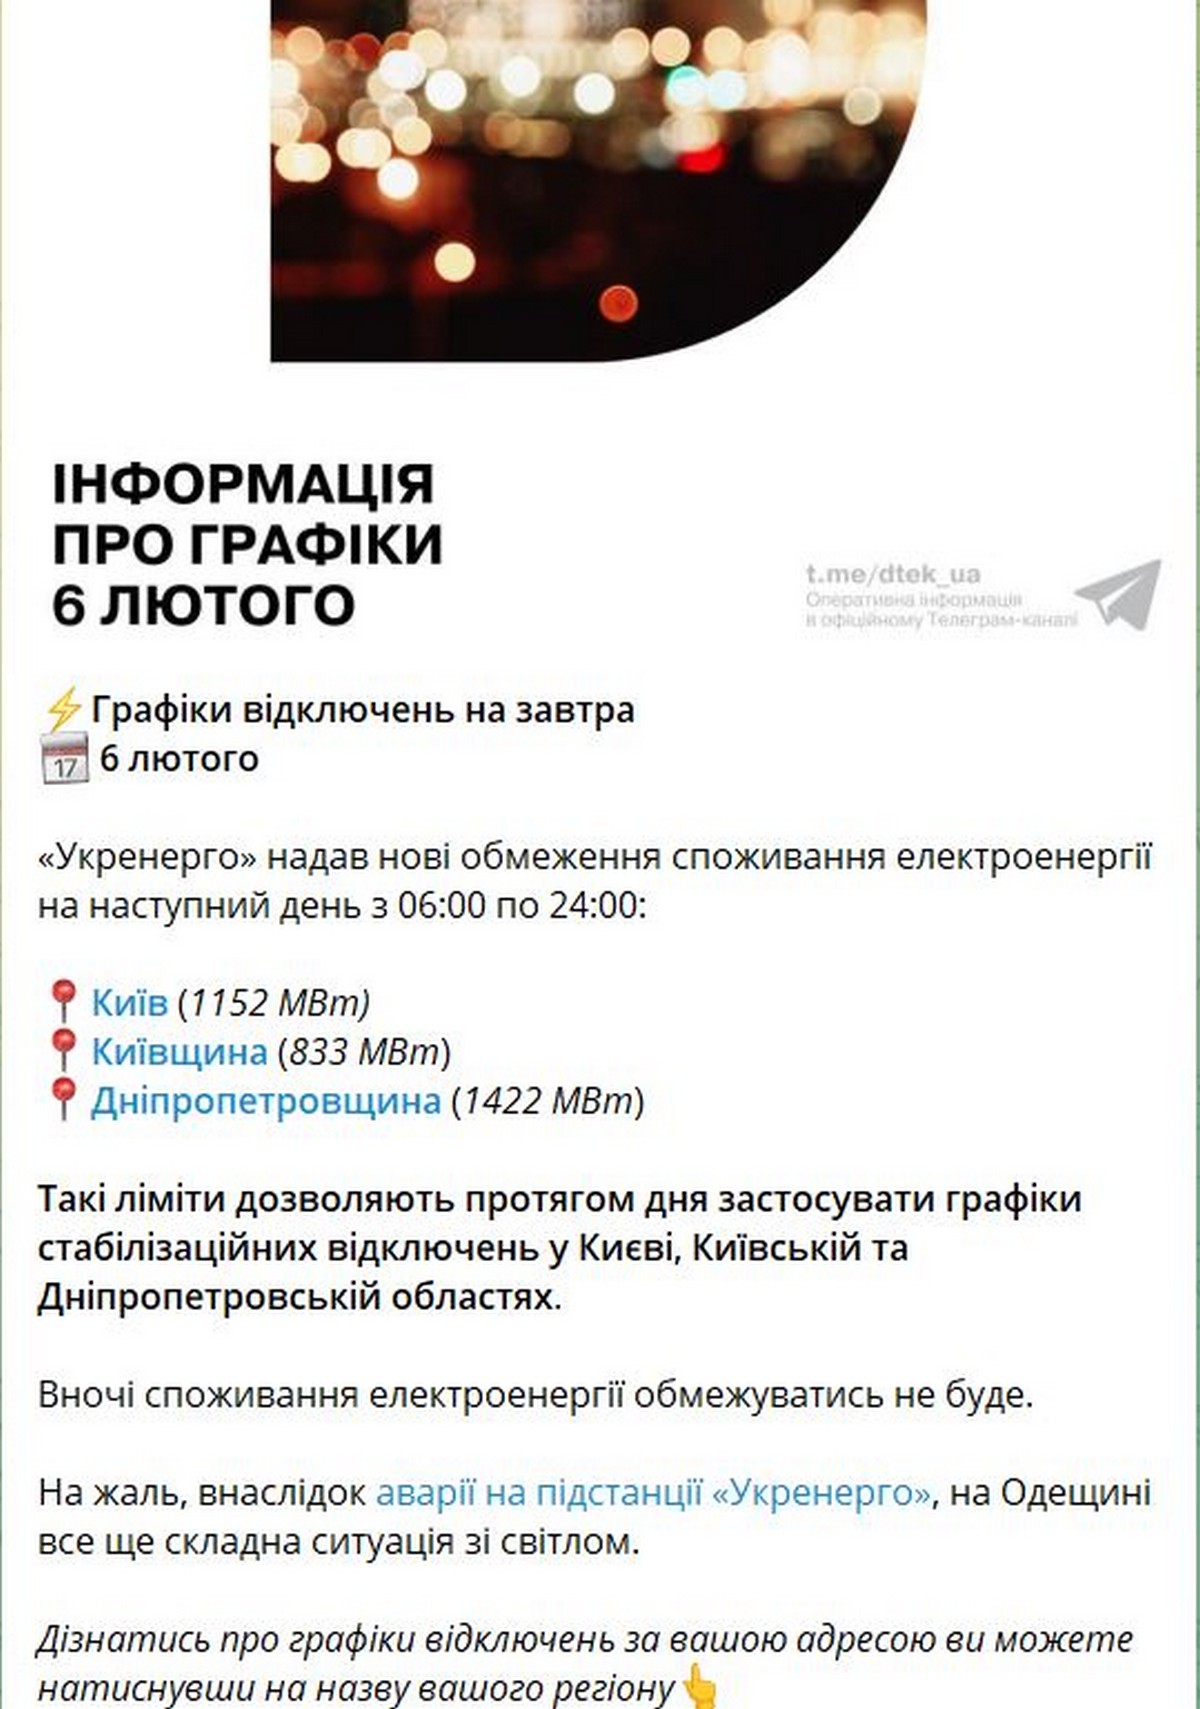 На Дніпропетровщині 6 лютого діють стабілізаційні графіки відключень світла